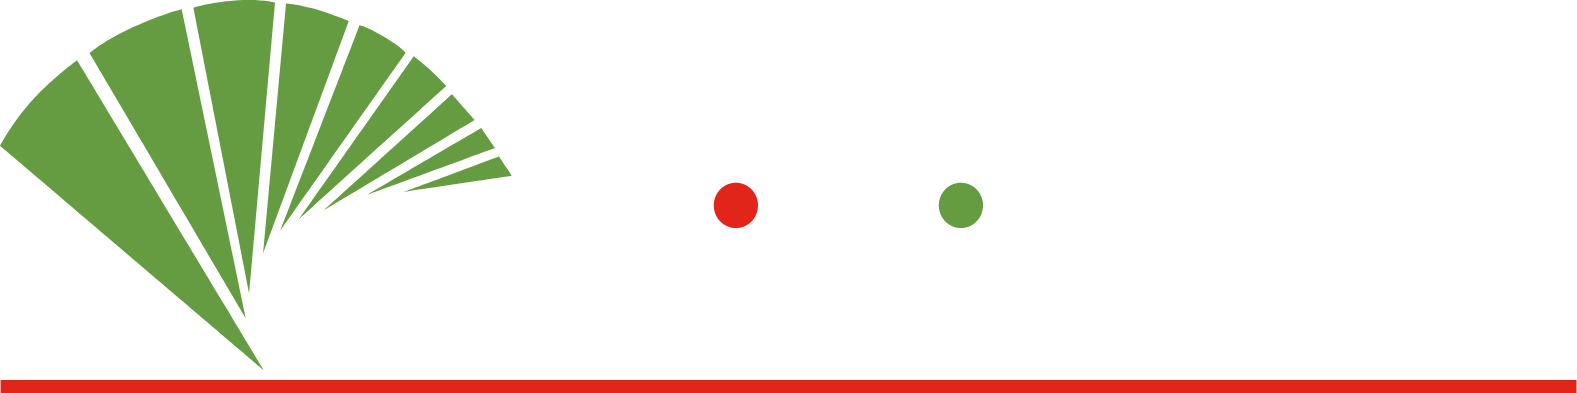 Unicaja Banco logo grand pour les fonds sombres (PNG transparent)